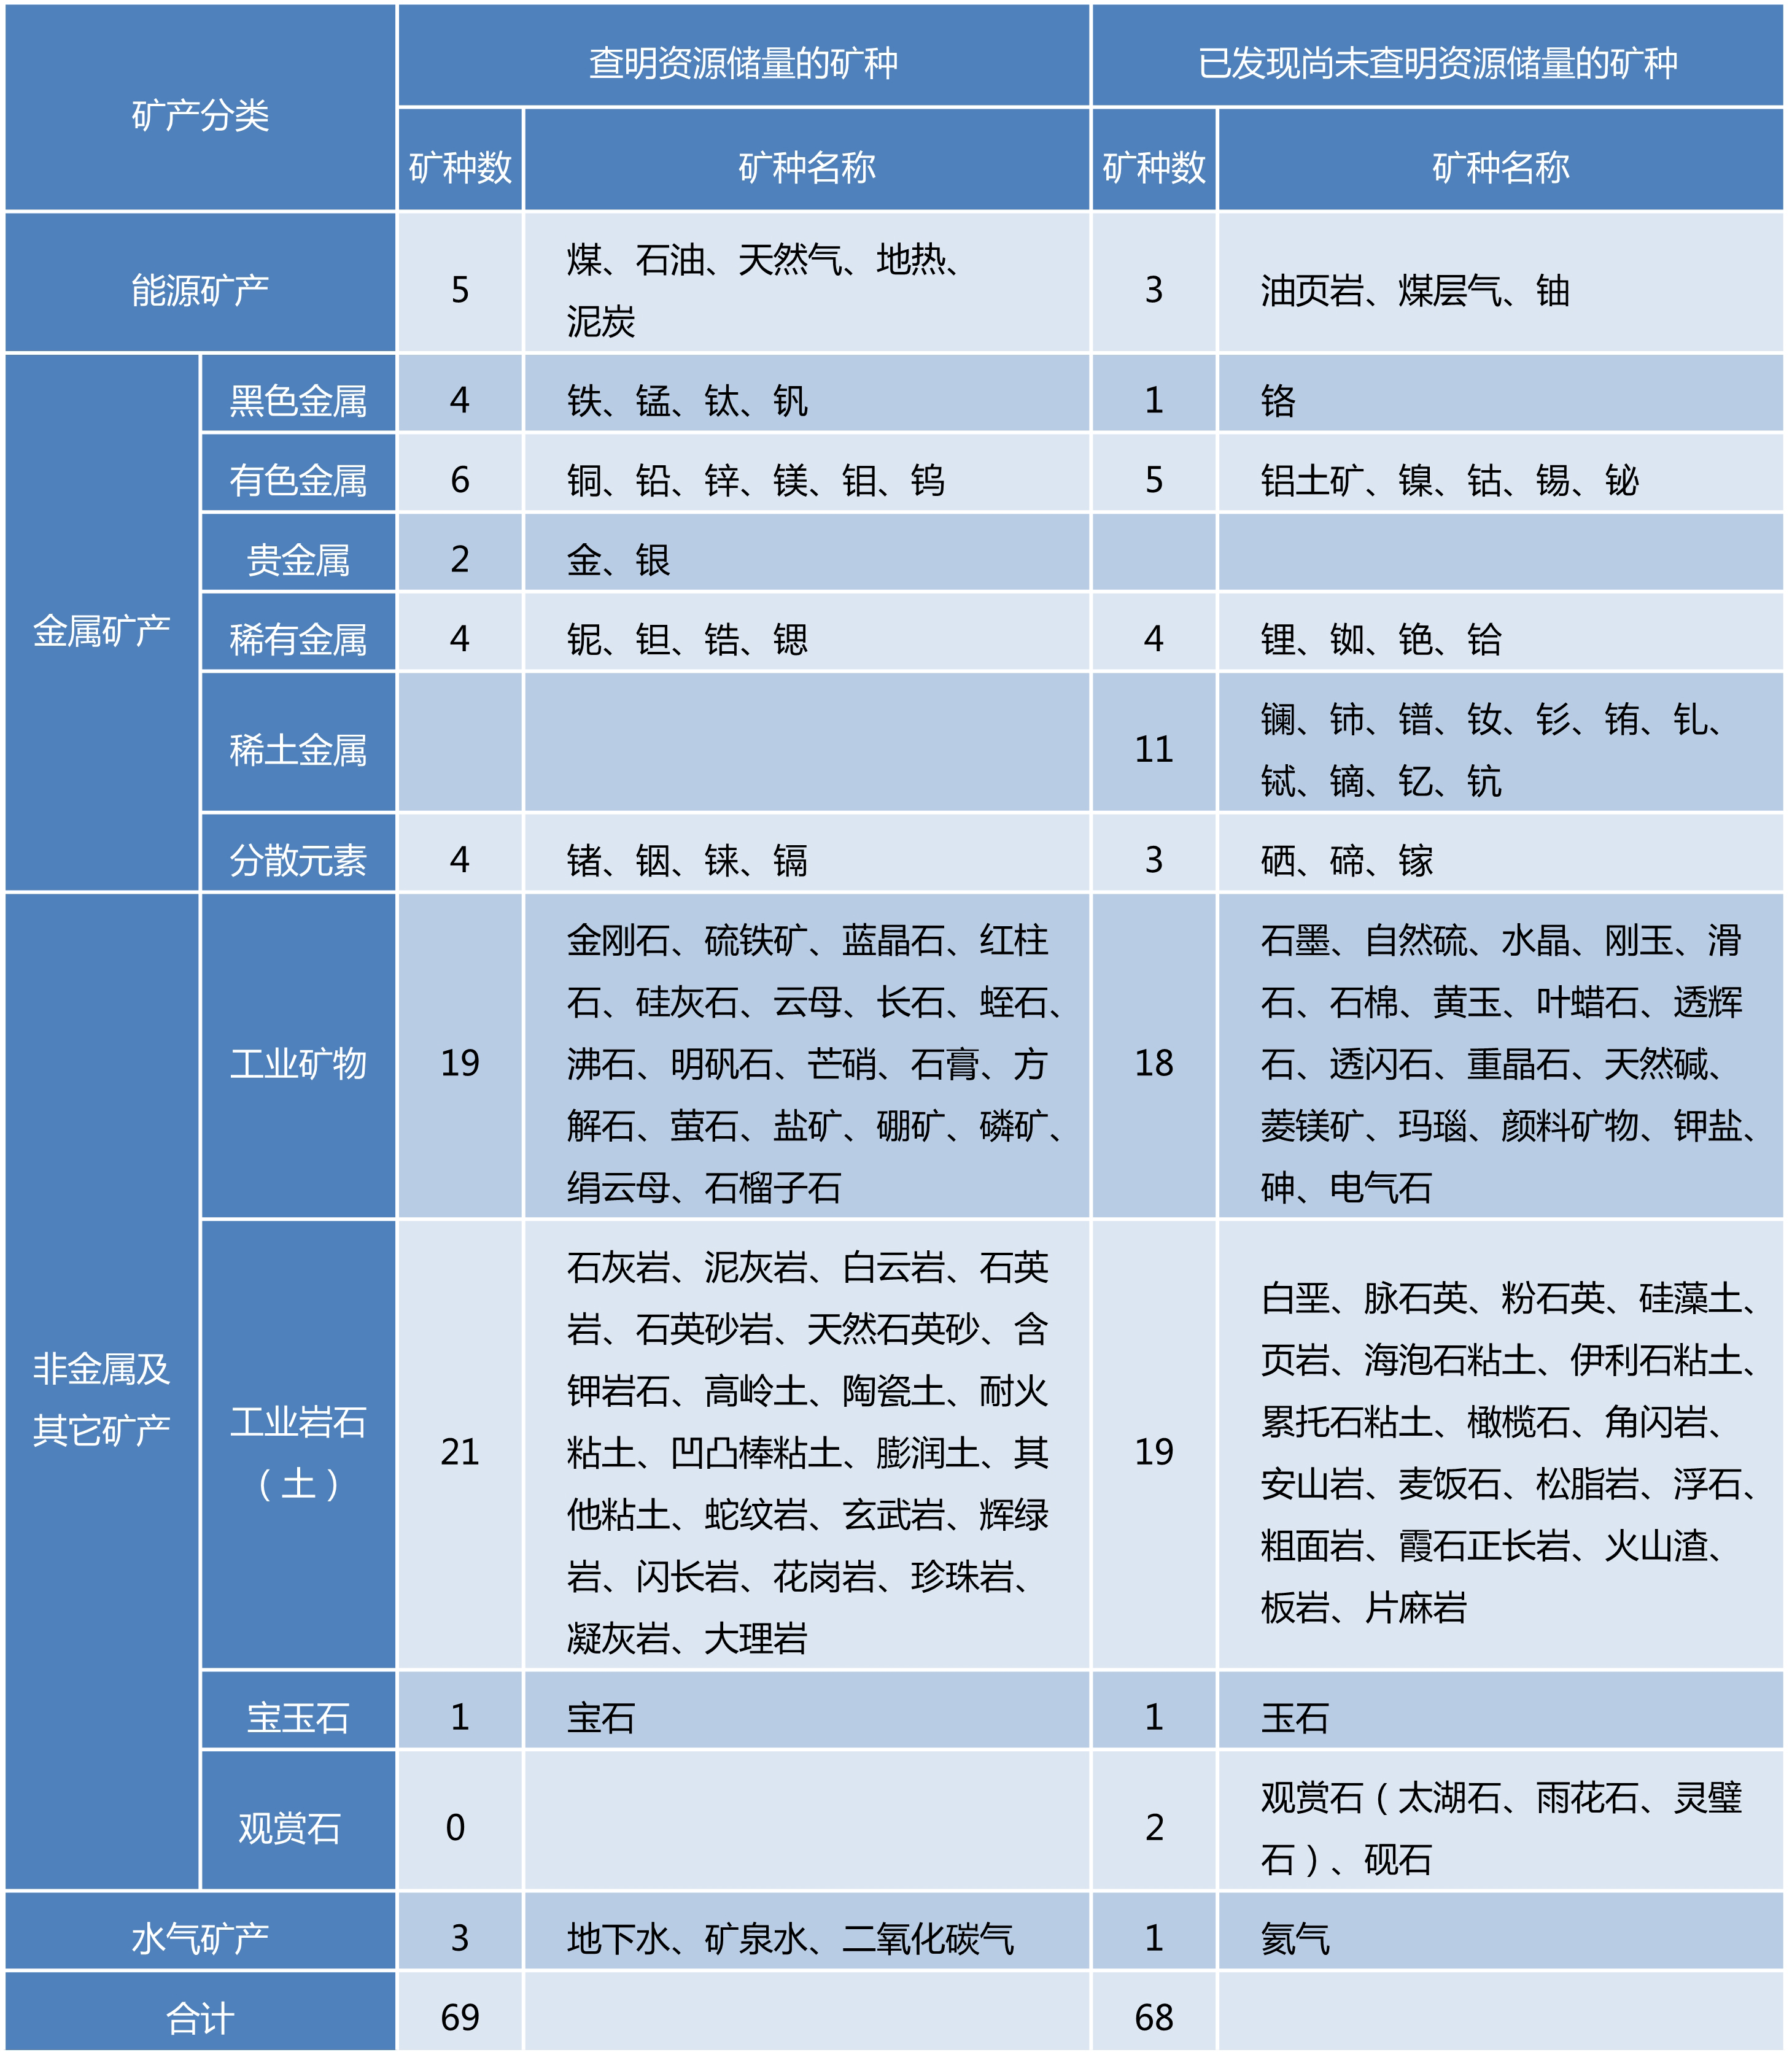 2.江苏省矿产资源分类表.jpg